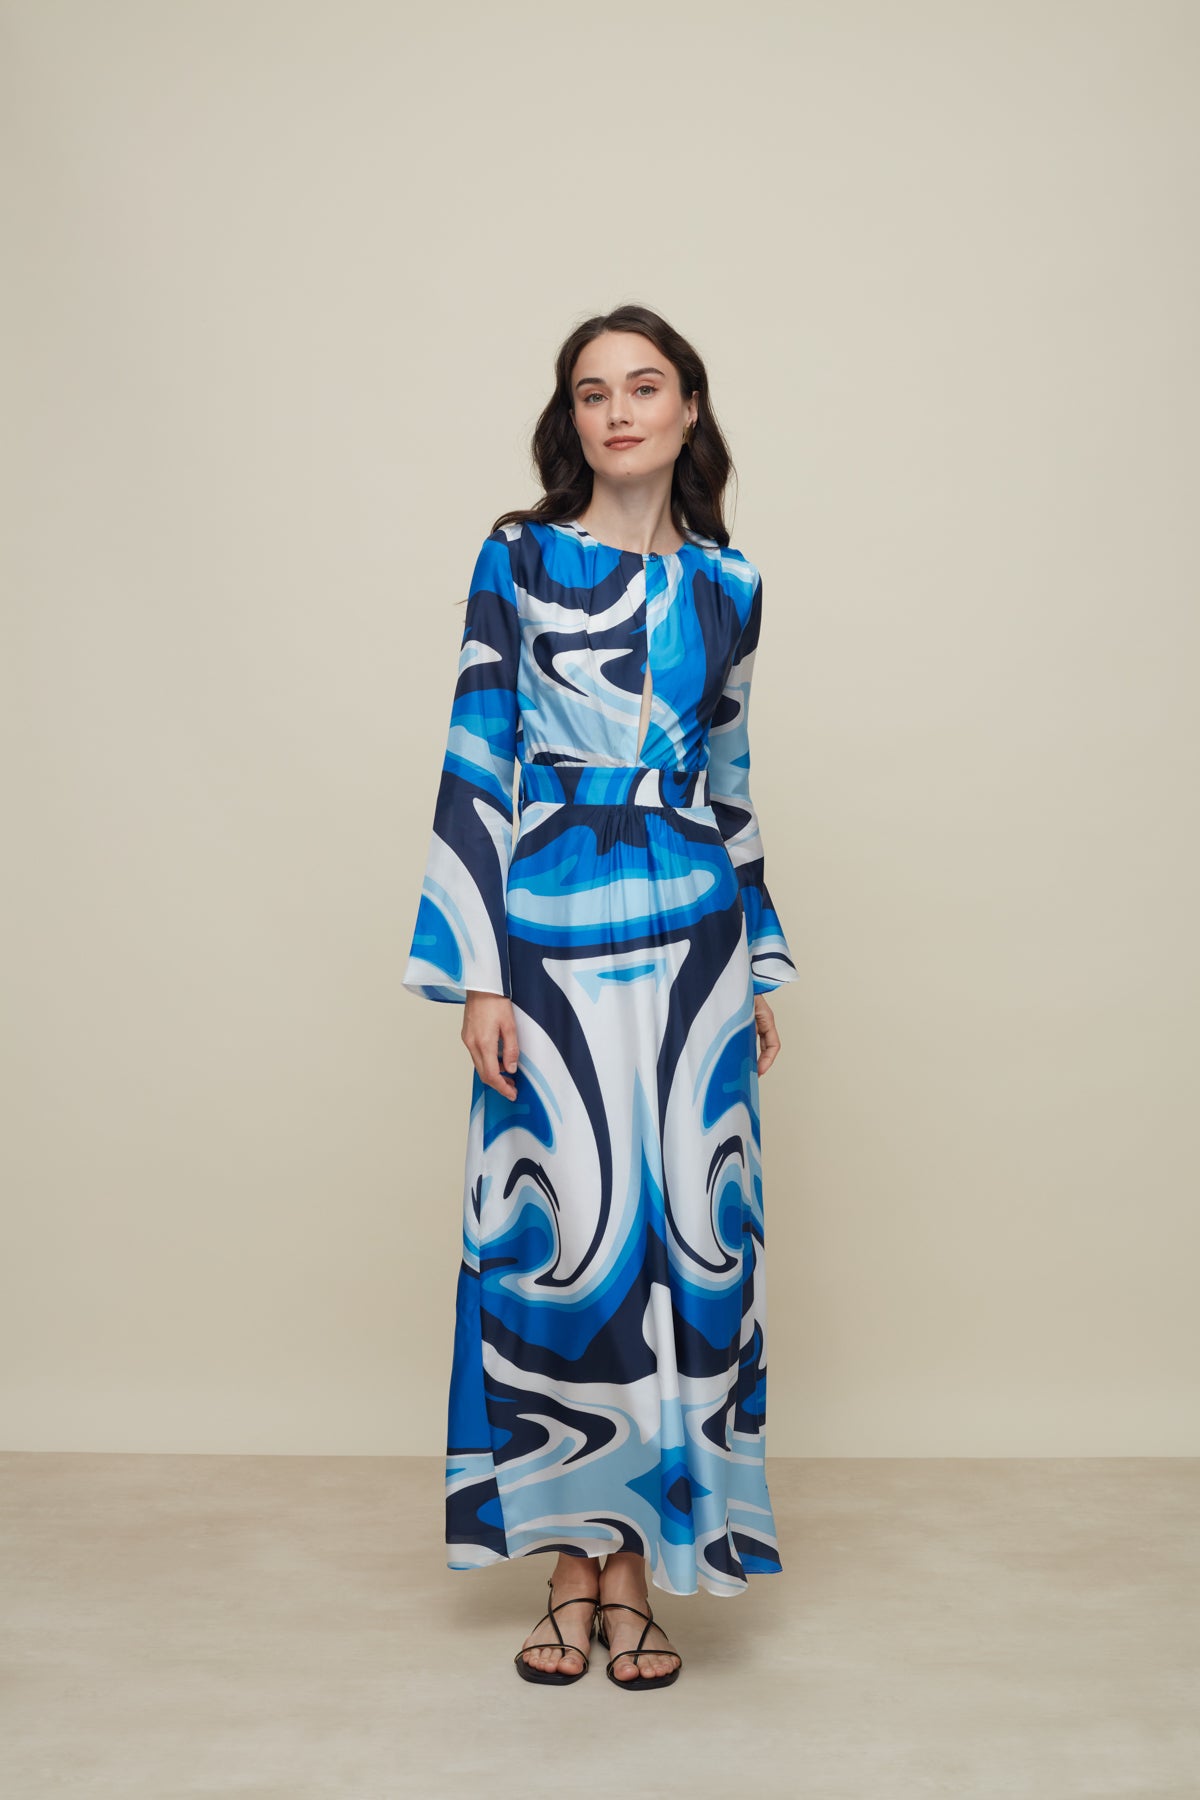 Galeria-Lavander Liquid Blue Silk Dress-Justbrazil